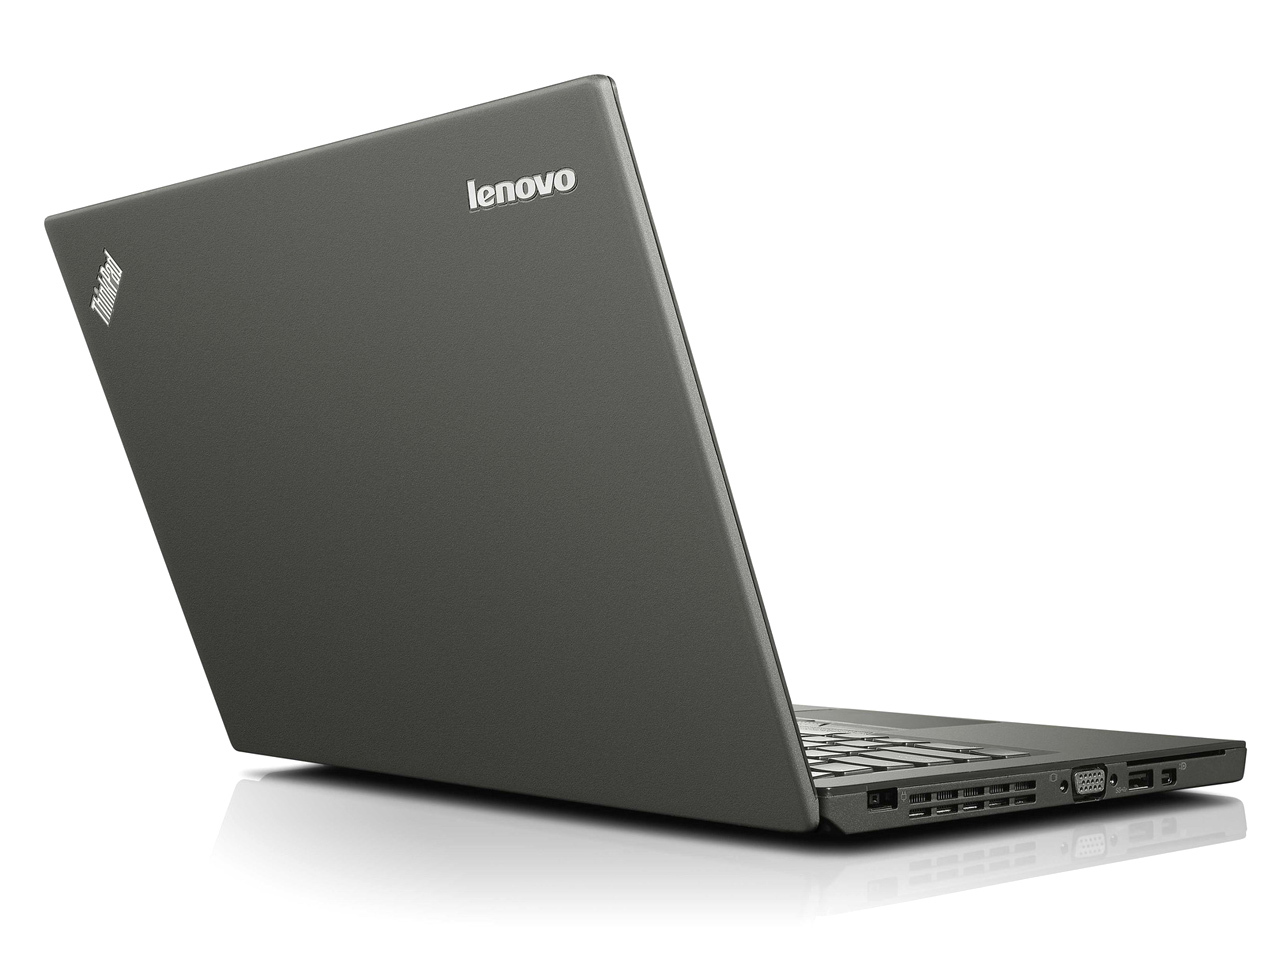 Lenovo ThinkPad X250 Intel i5 5300u 2.30Ghz 8GB RAM 180GB SSD 12.5" NO OS  - B Grade Image 2